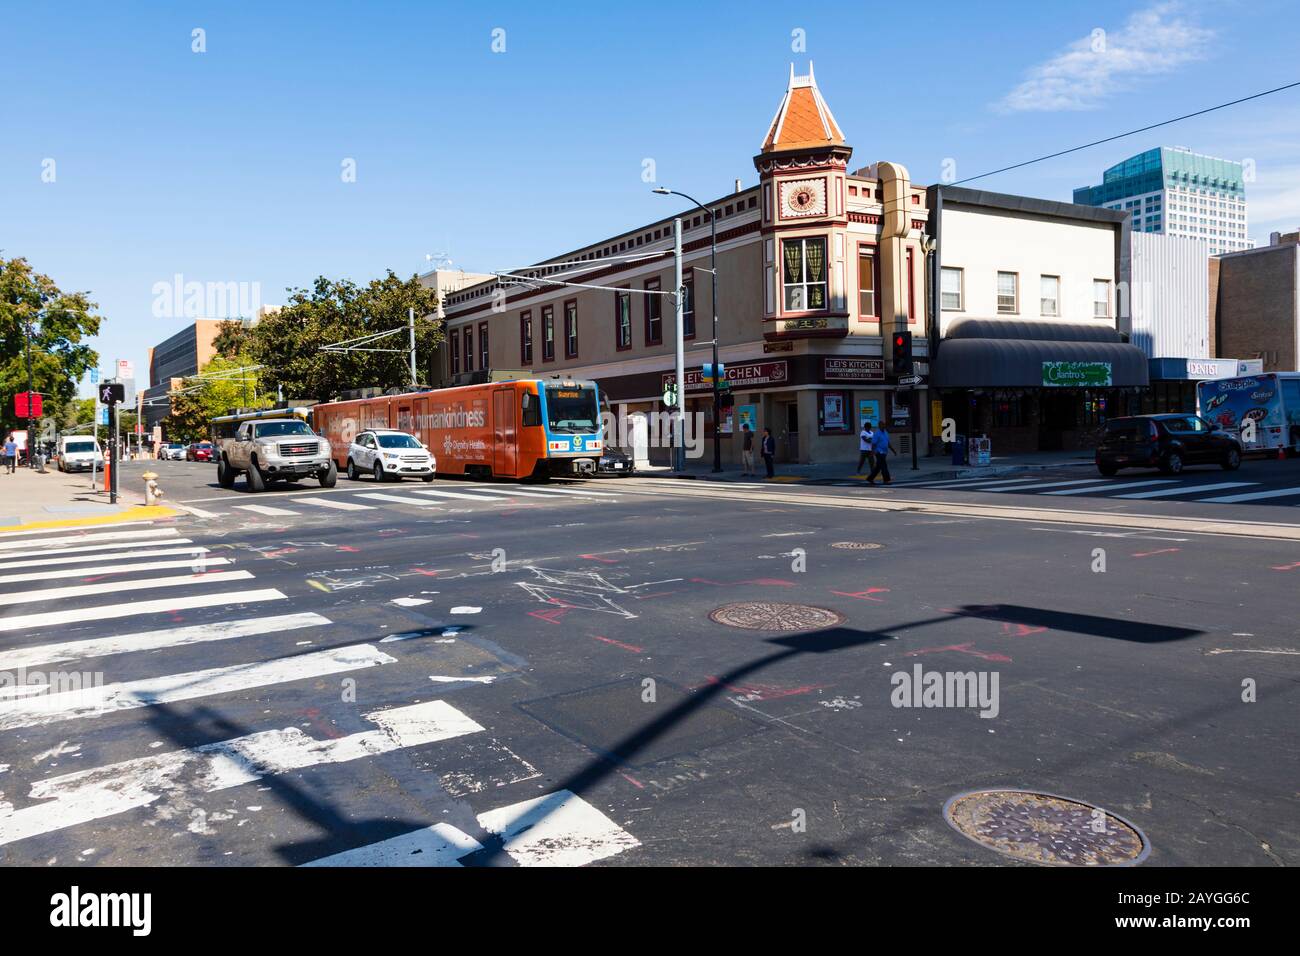 Incrocio tra J Street e 7th Street, di fronte al Sullivan Building. Sacramento, California, Stati Uniti. Il traffico e i tram aspettano di attraversare. Foto Stock